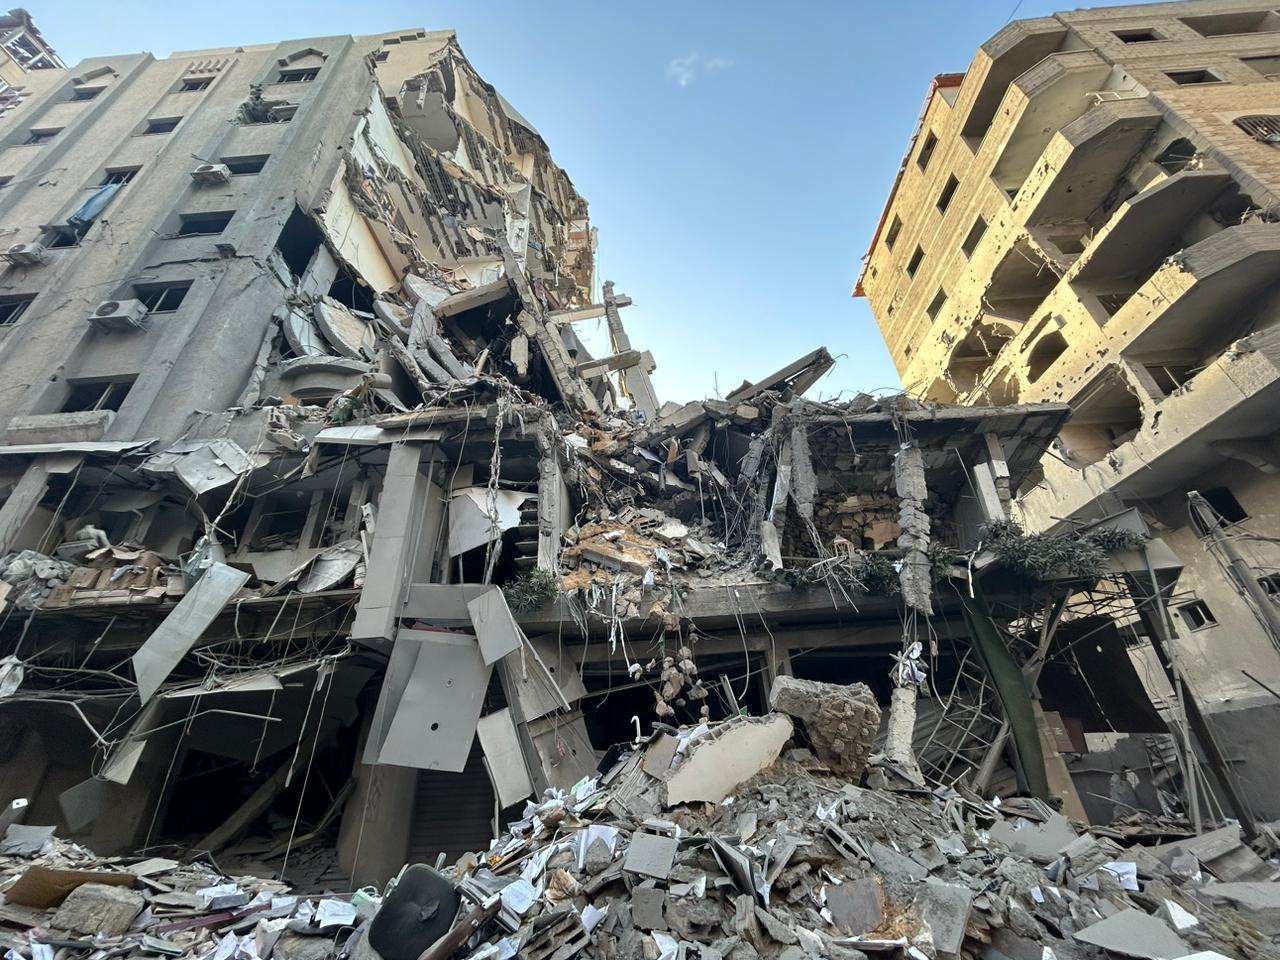 دائرة العمل والتخطيط الفلسطيني تدين تدمير مقرها بغزة وتسويته بالارض